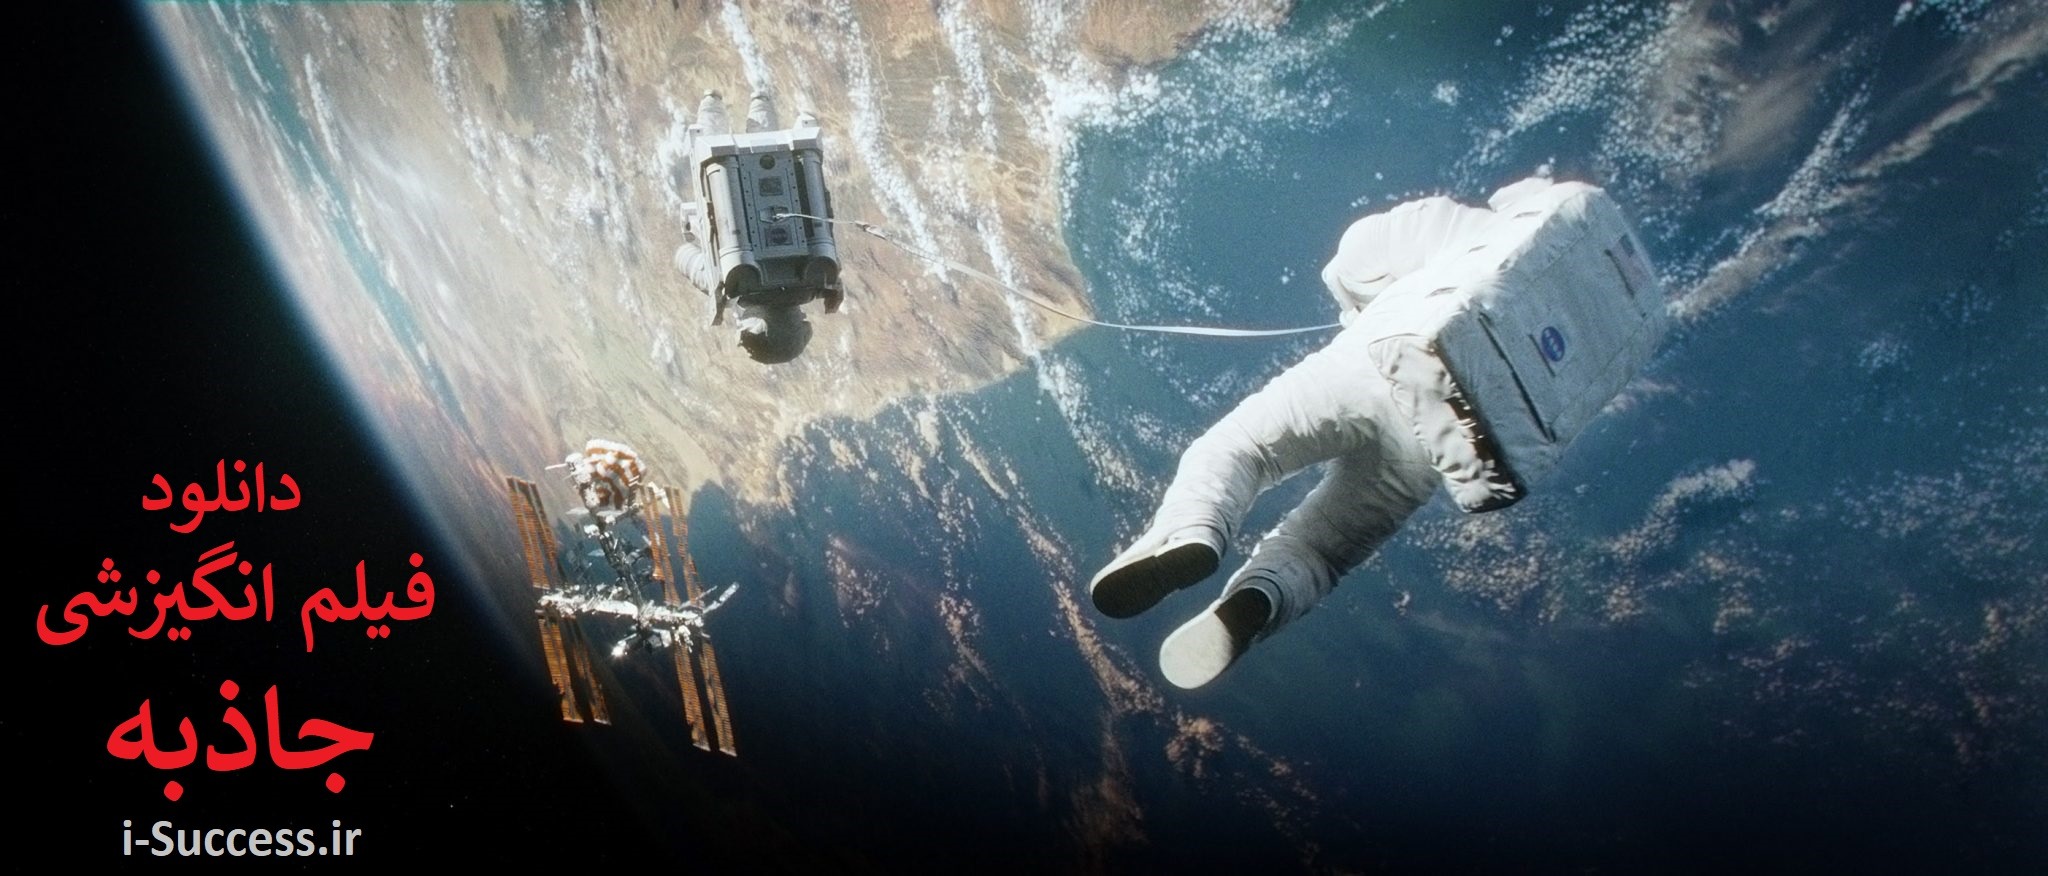 دانلود فیلم انگیزشی جاذبه Gravity 